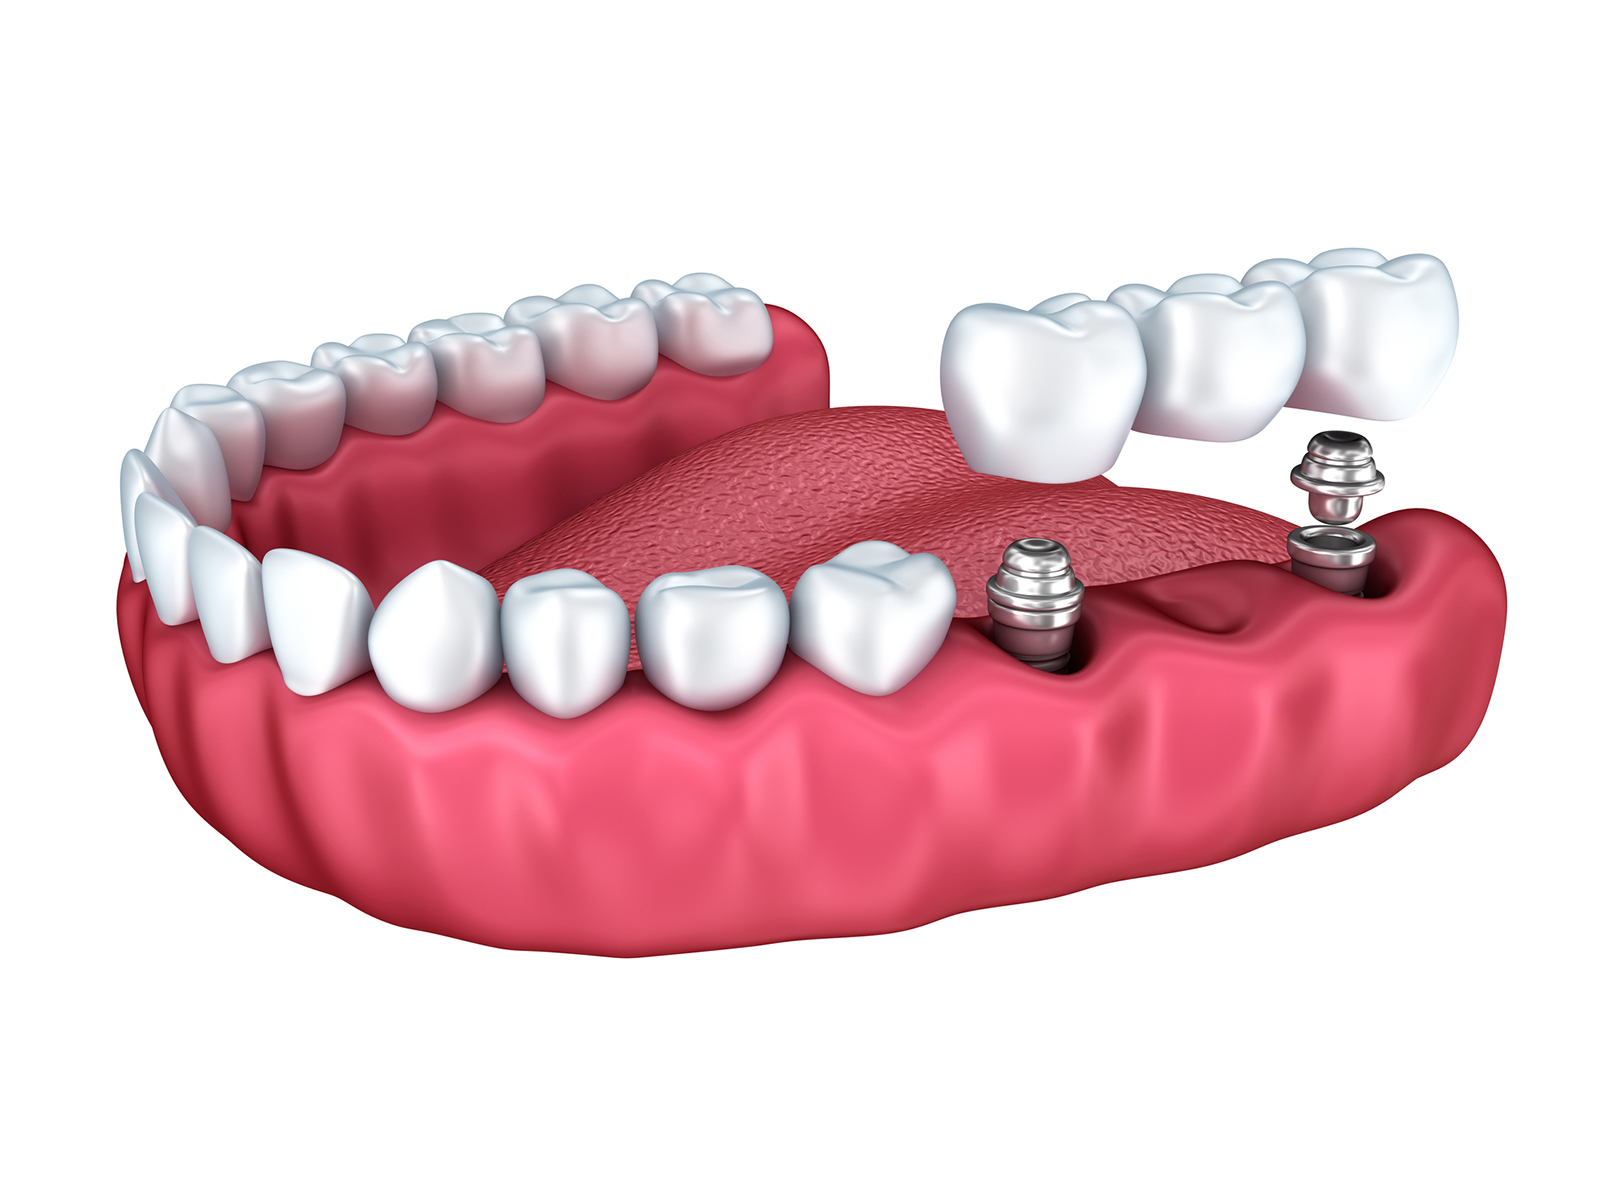 Does food get under dental implants?